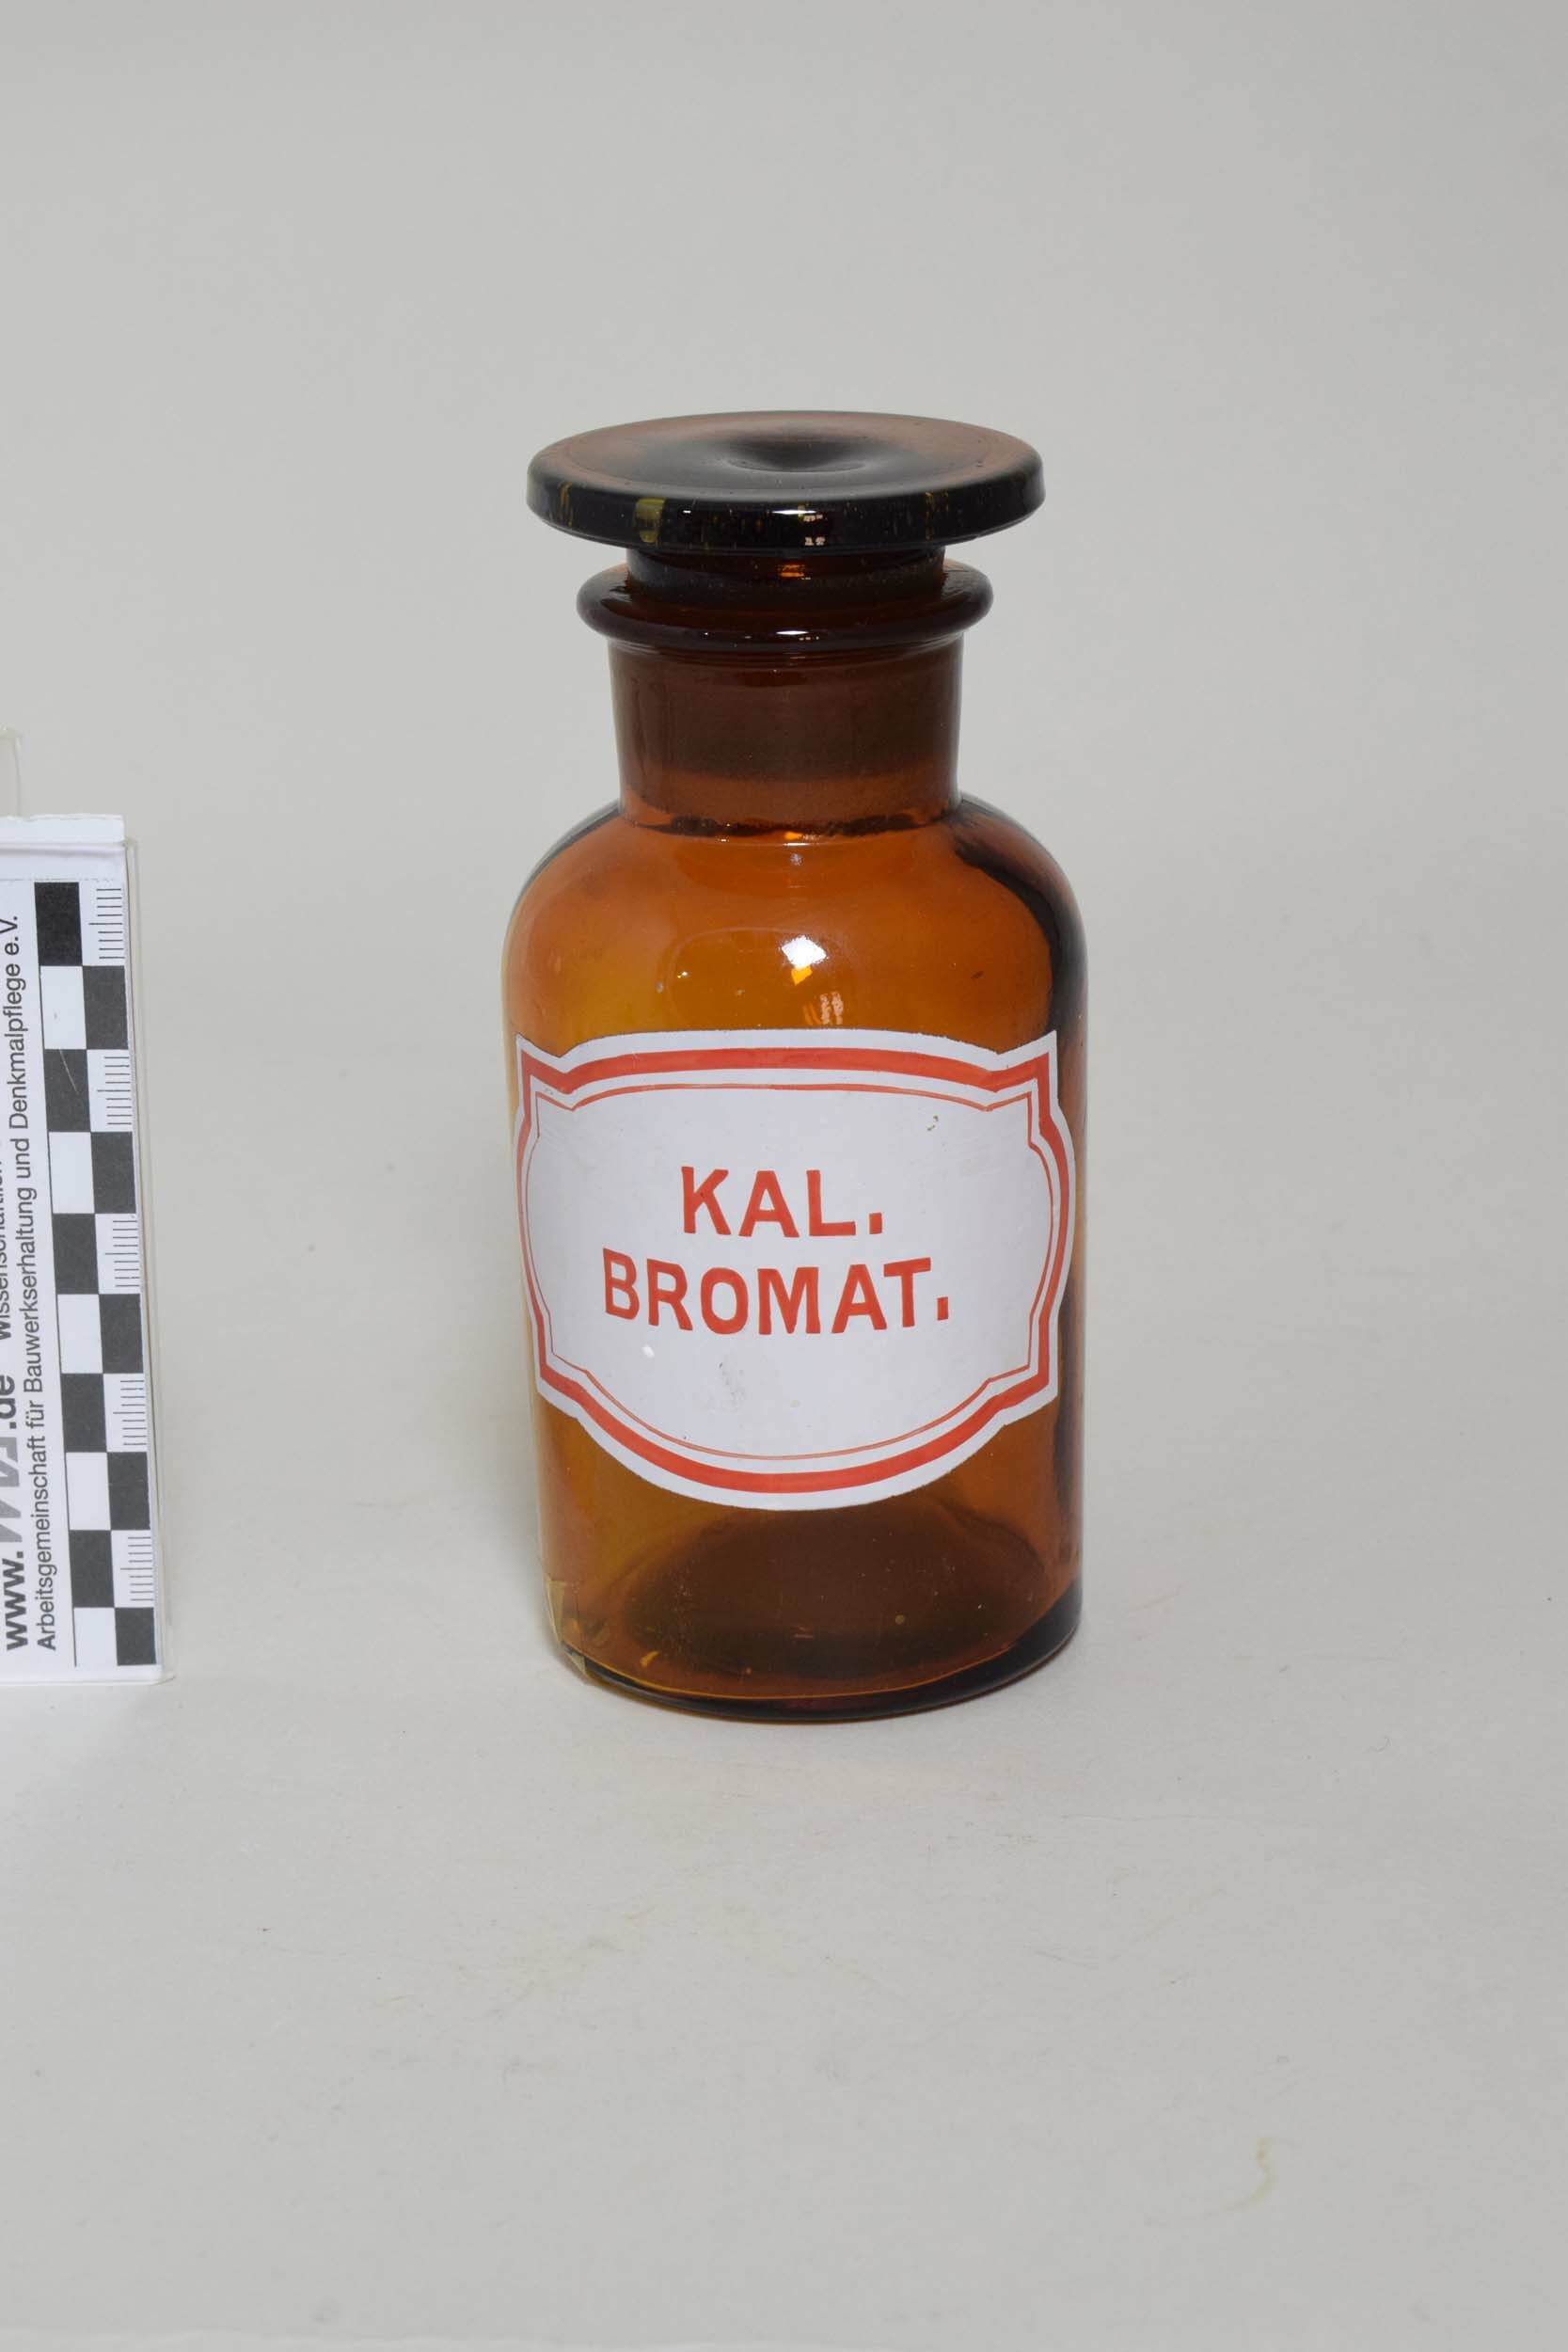 Apothekenflasche "KAL. BROMAT." (Kaliumbromat) (Heimatmuseum Dohna CC BY-NC-SA)